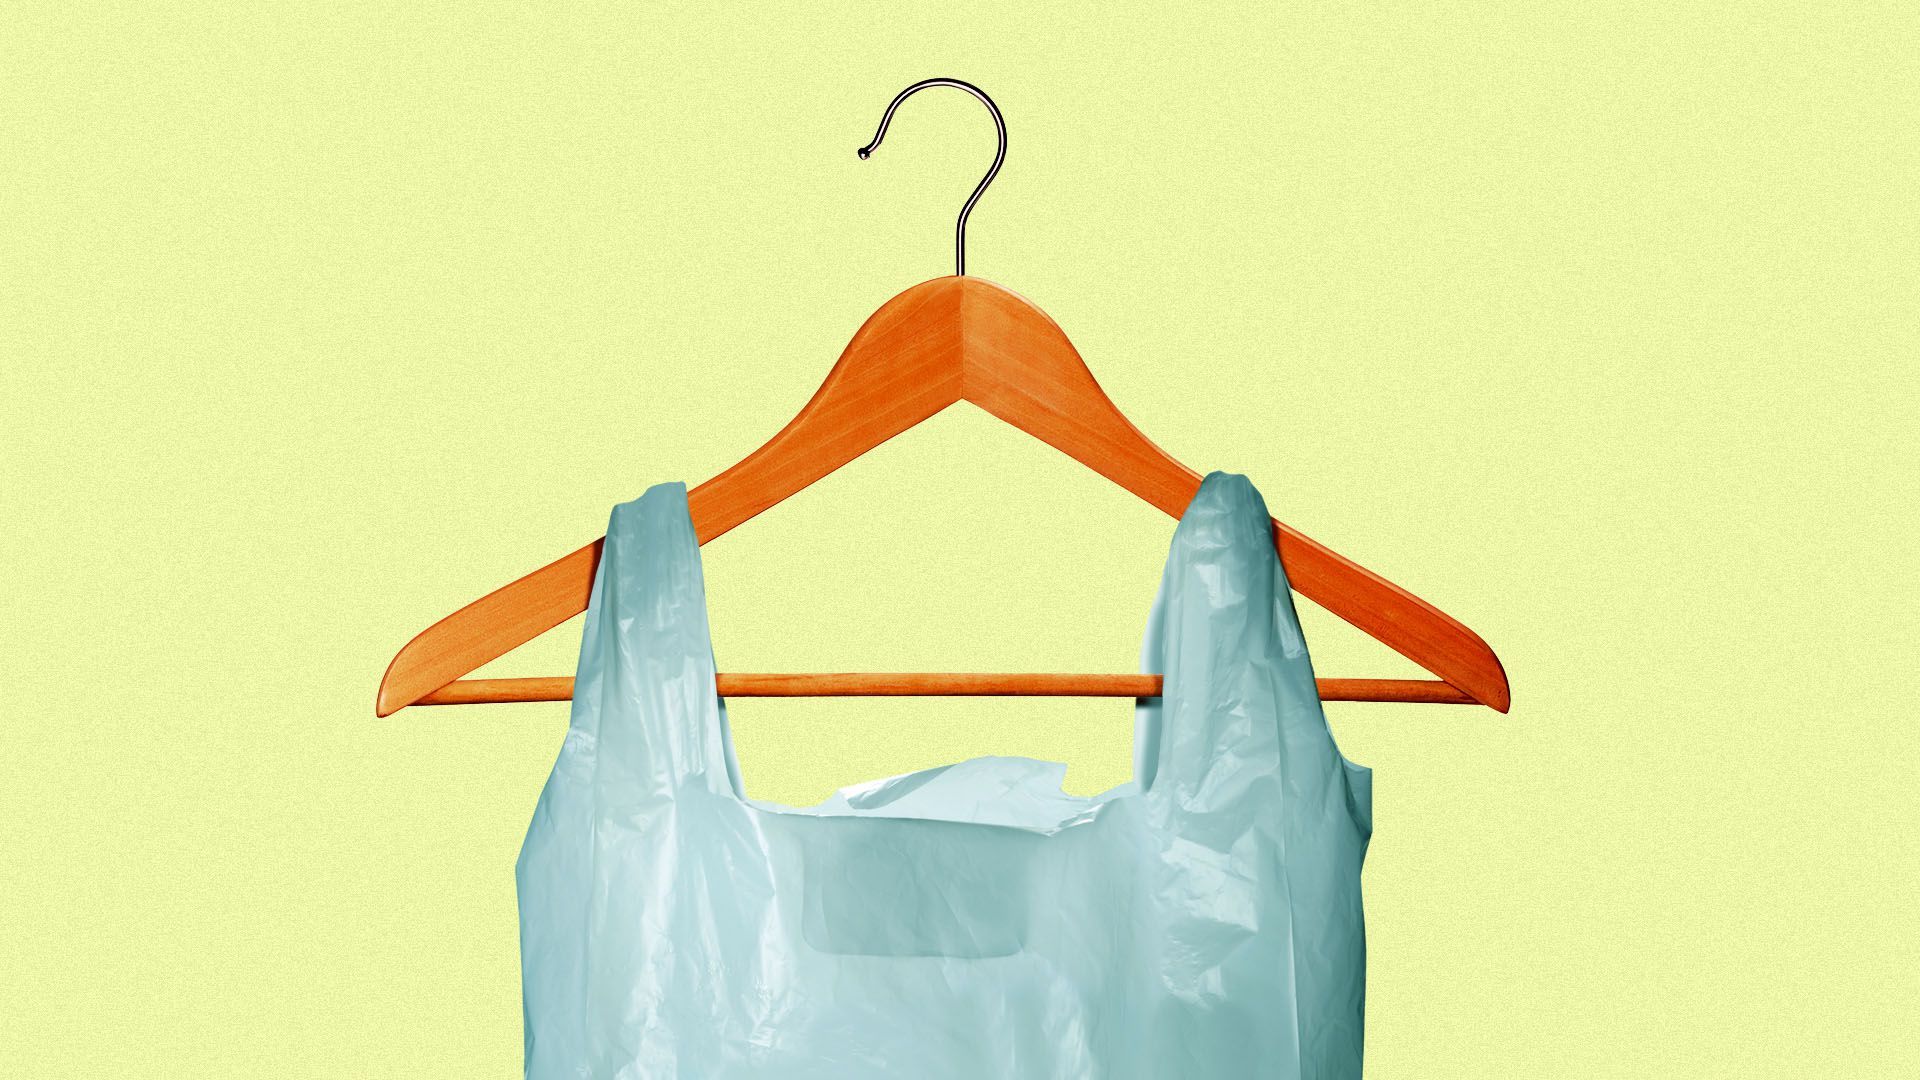 Illustration of a plastic bag on a coat hanger